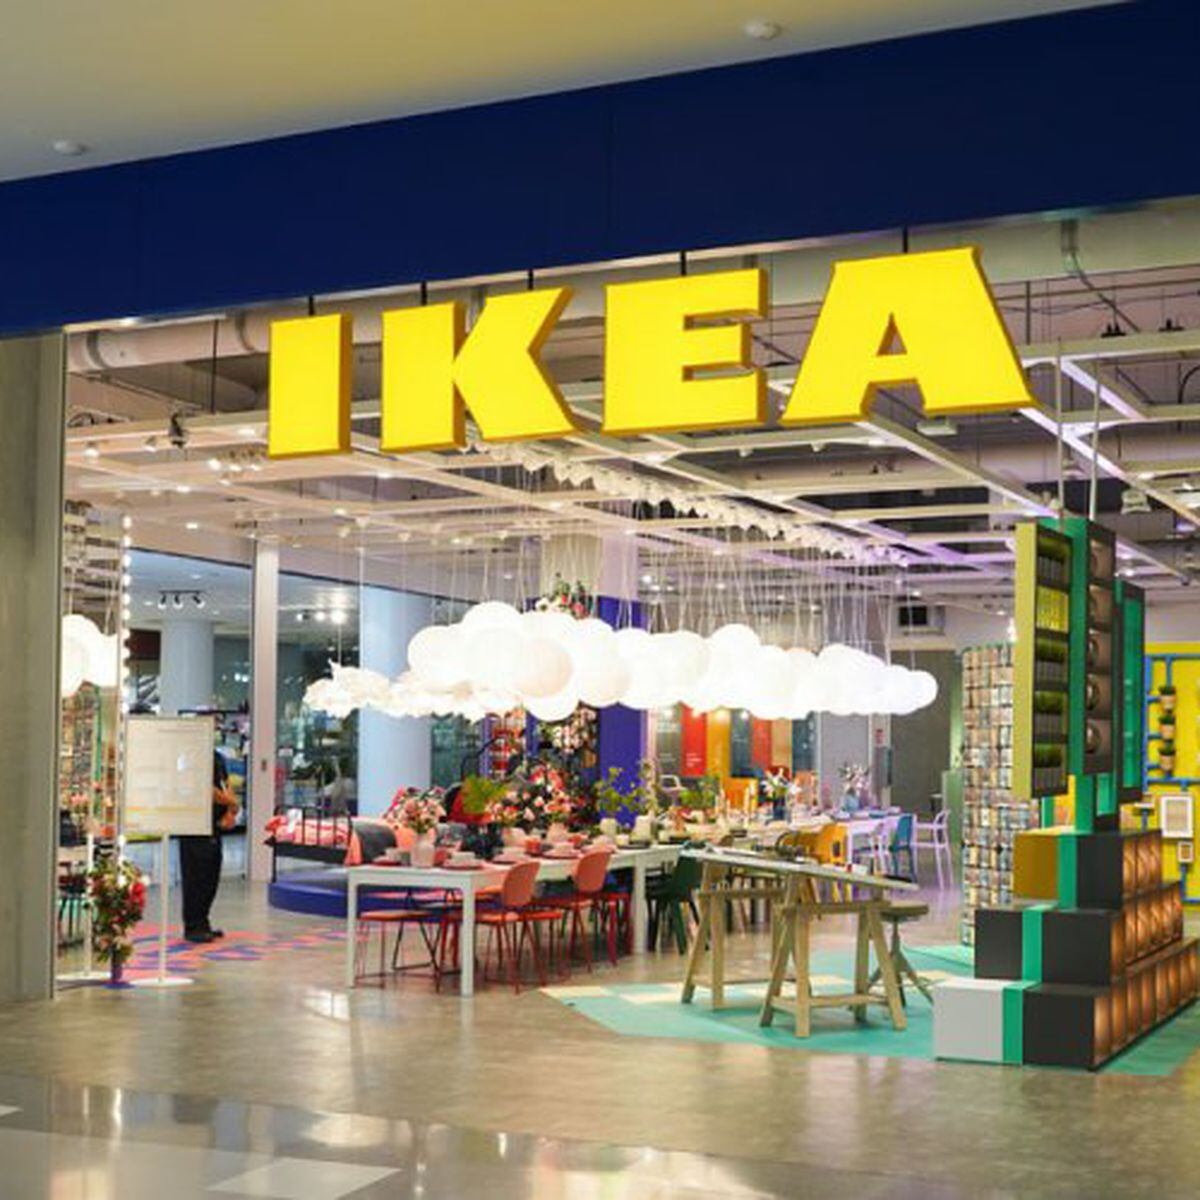 Encuentra una mesa para tu hogar - IKEA Colombia